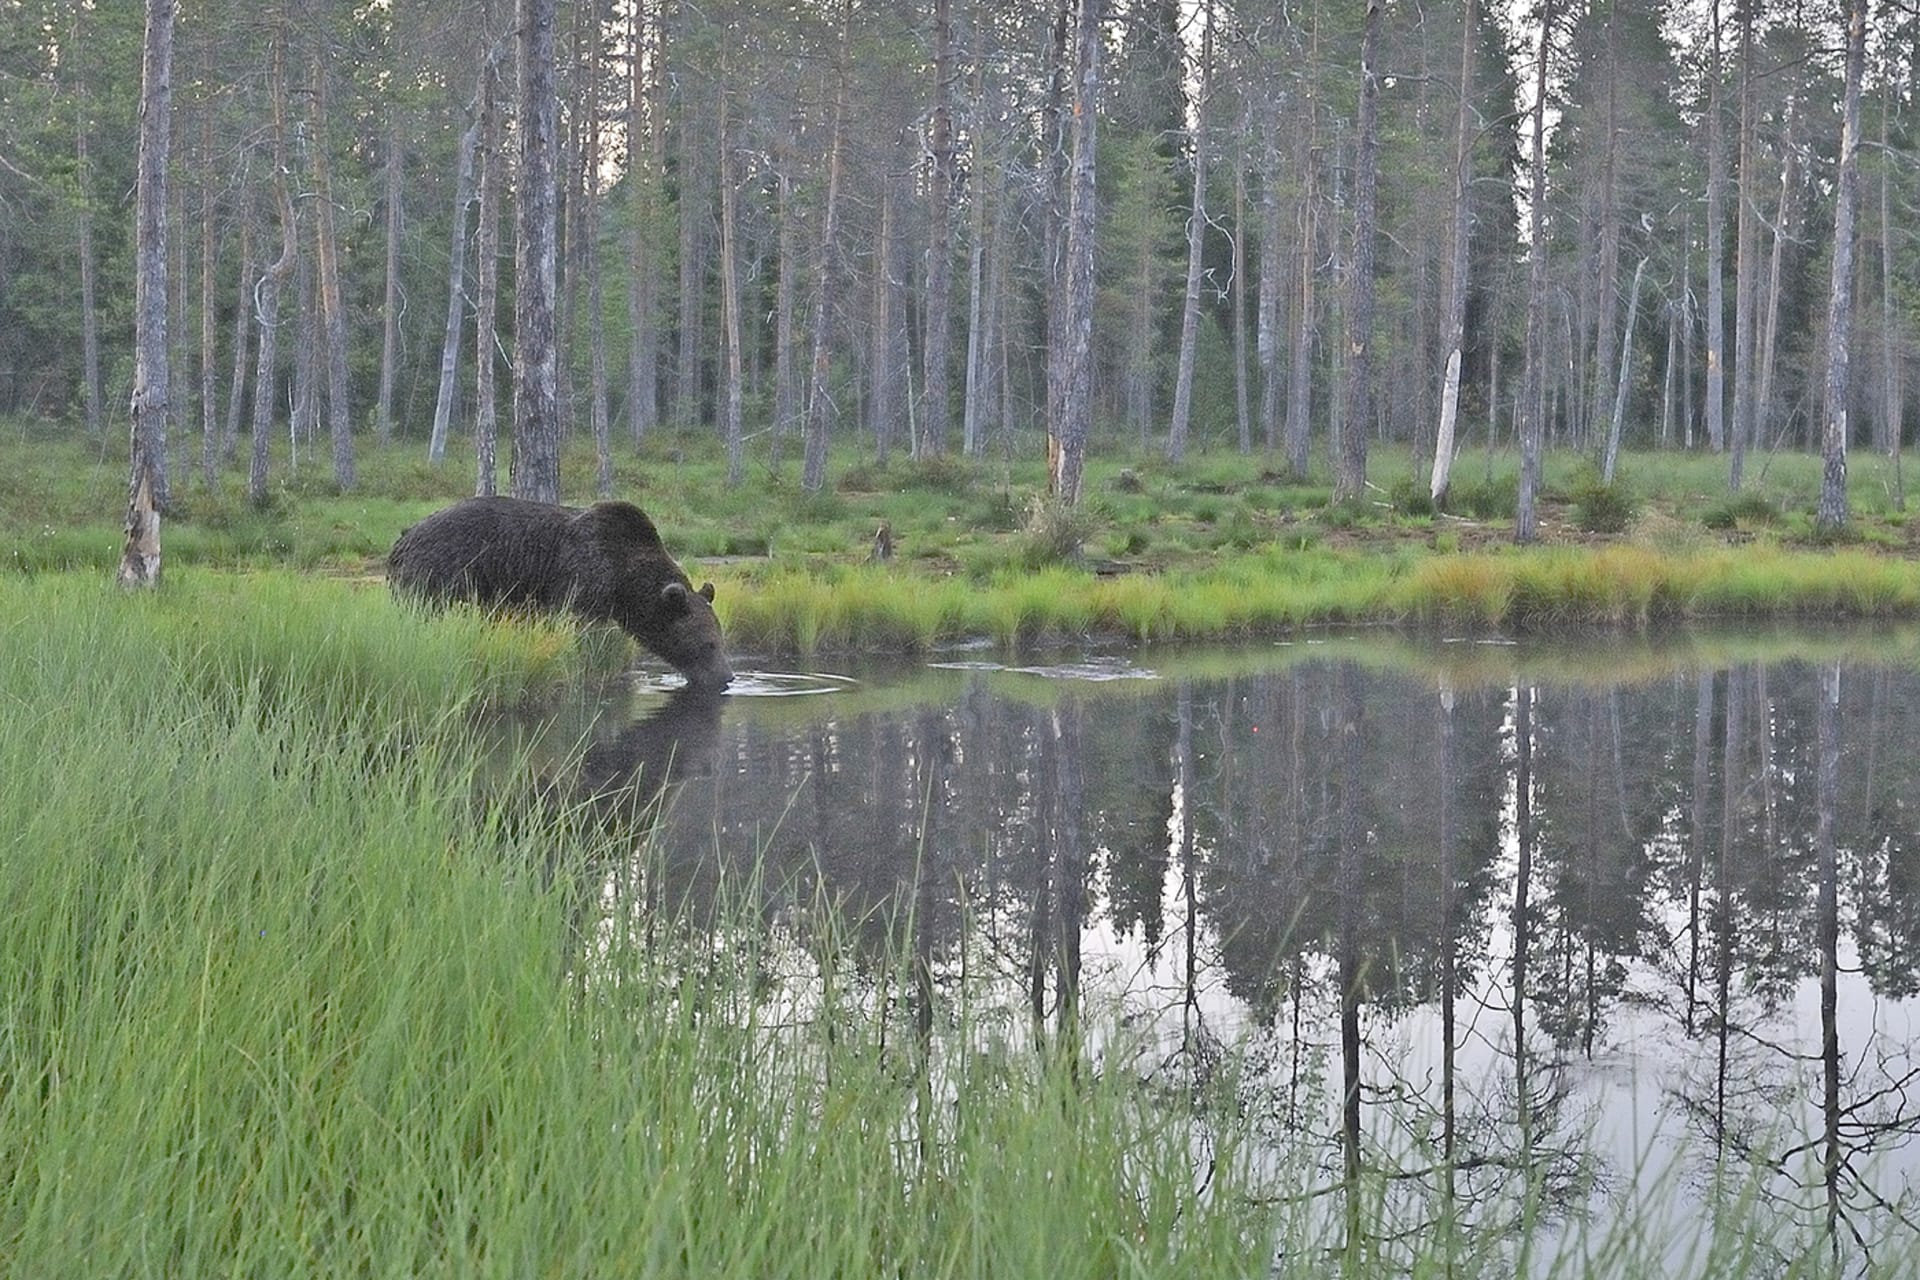 Bear Photography on Summer